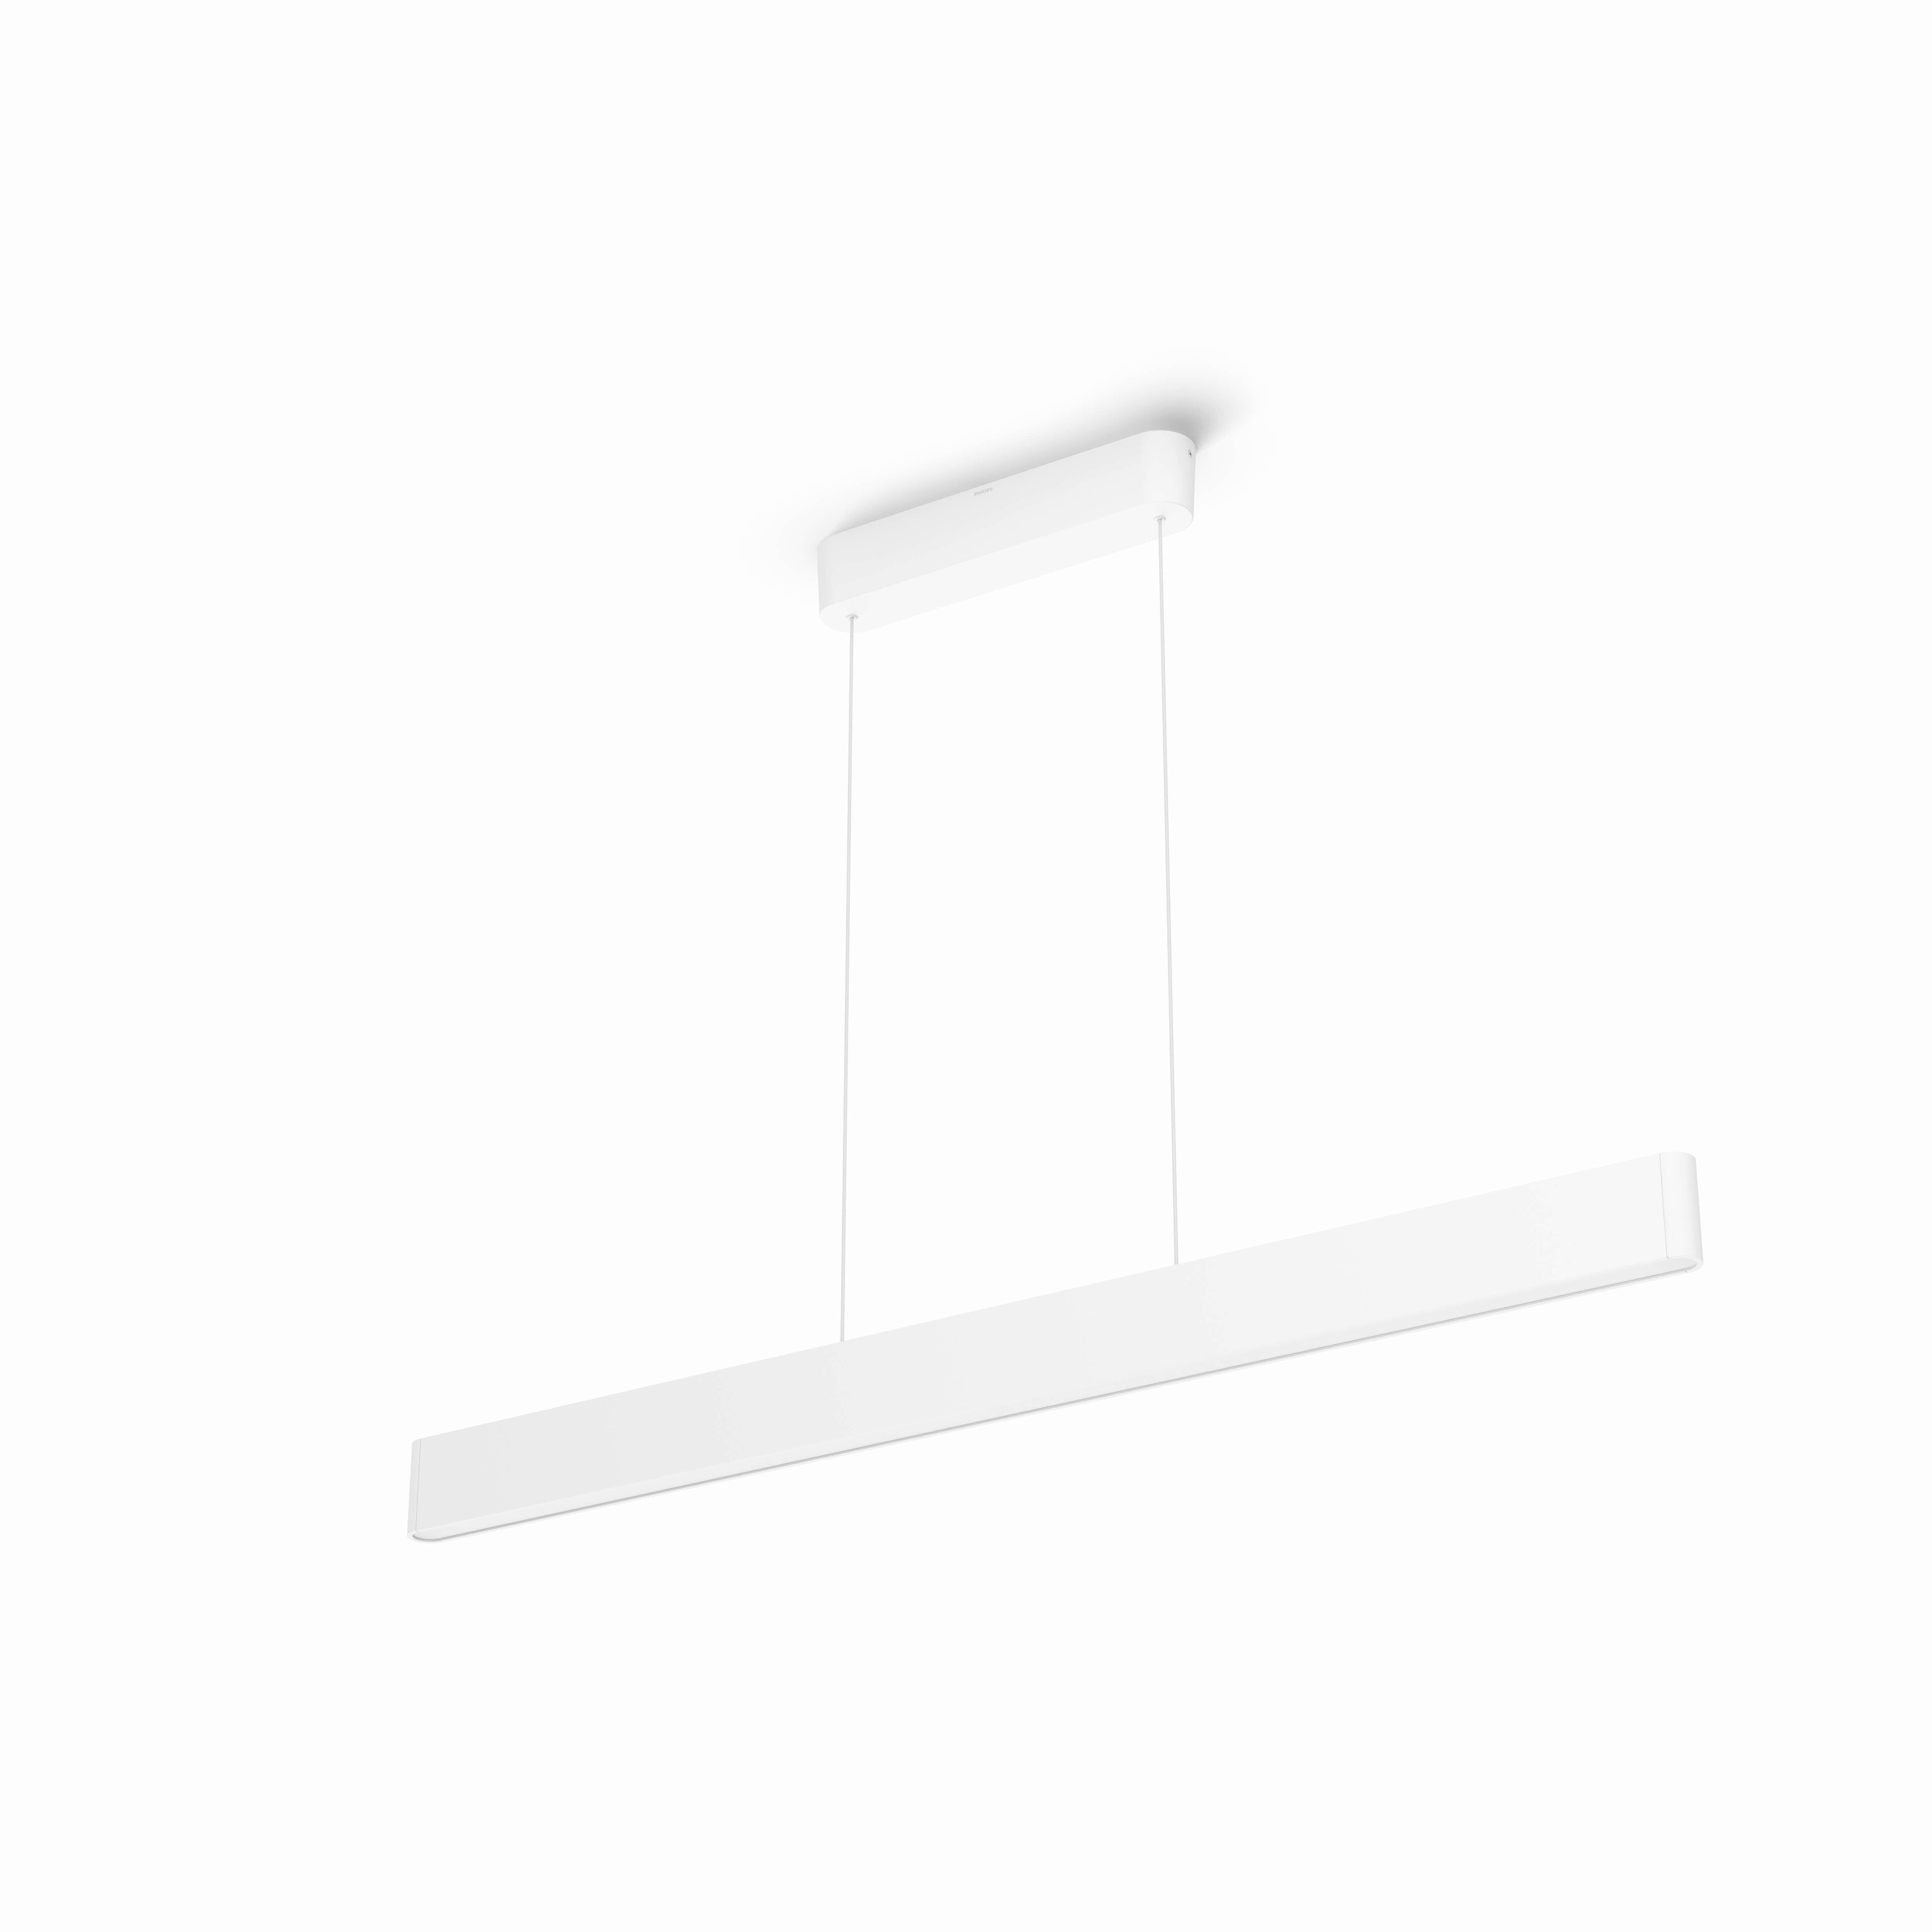 LED-HÄNGELEUCHTE Hue White & Color Ambiance Ensis 129,8/4/9 cm   - Weiß, Design, Kunststoff/Metall (129,8/4/9cm) - Philips HUE